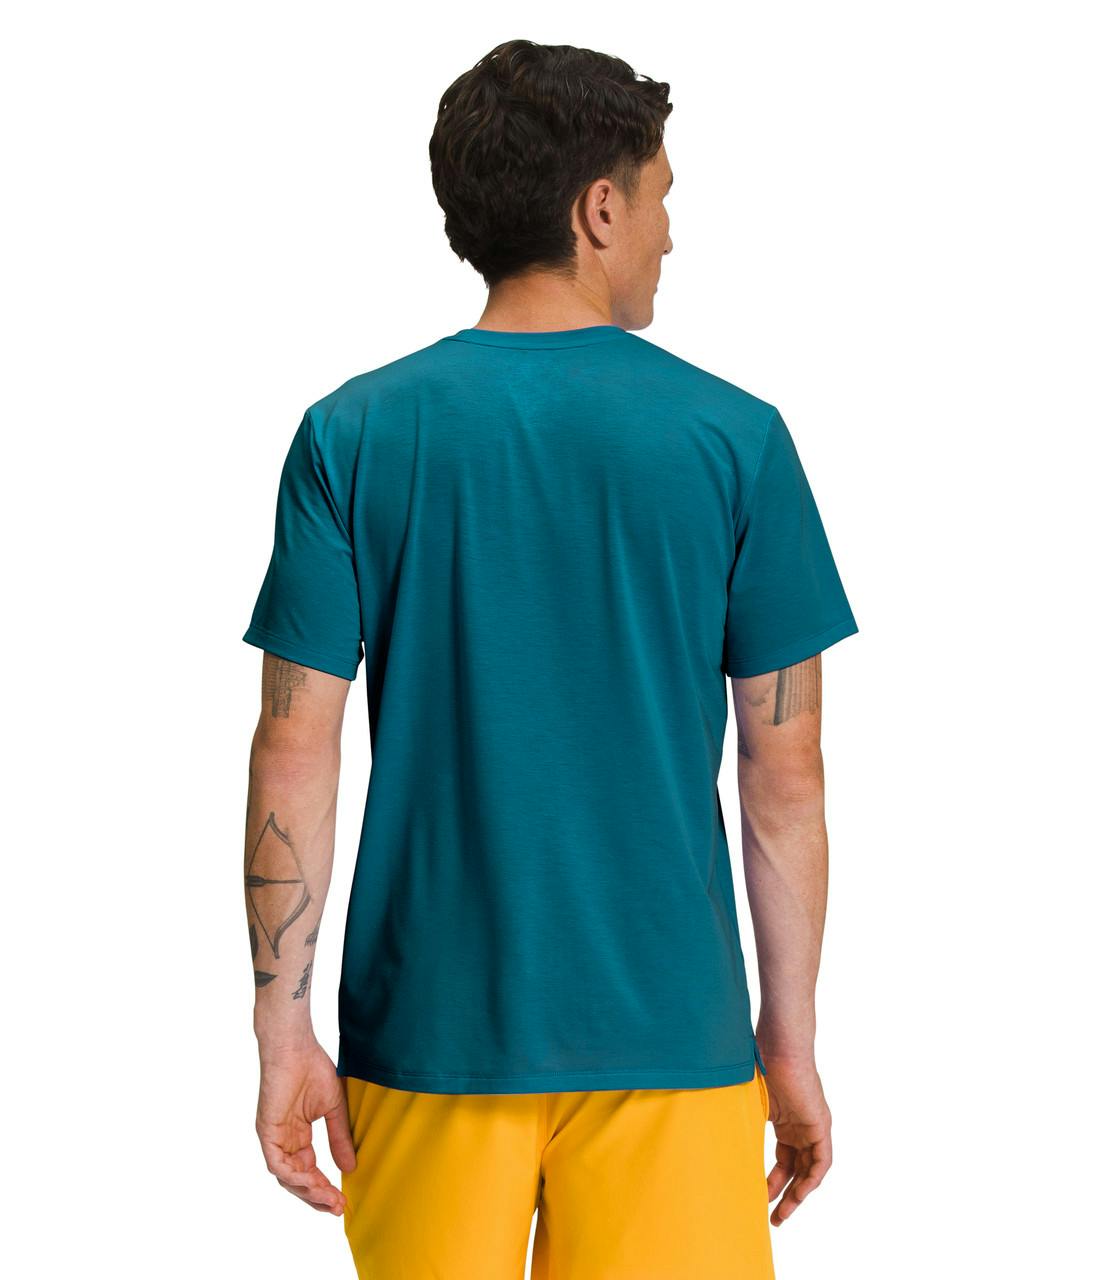 T-shirt Wander Corail bleu